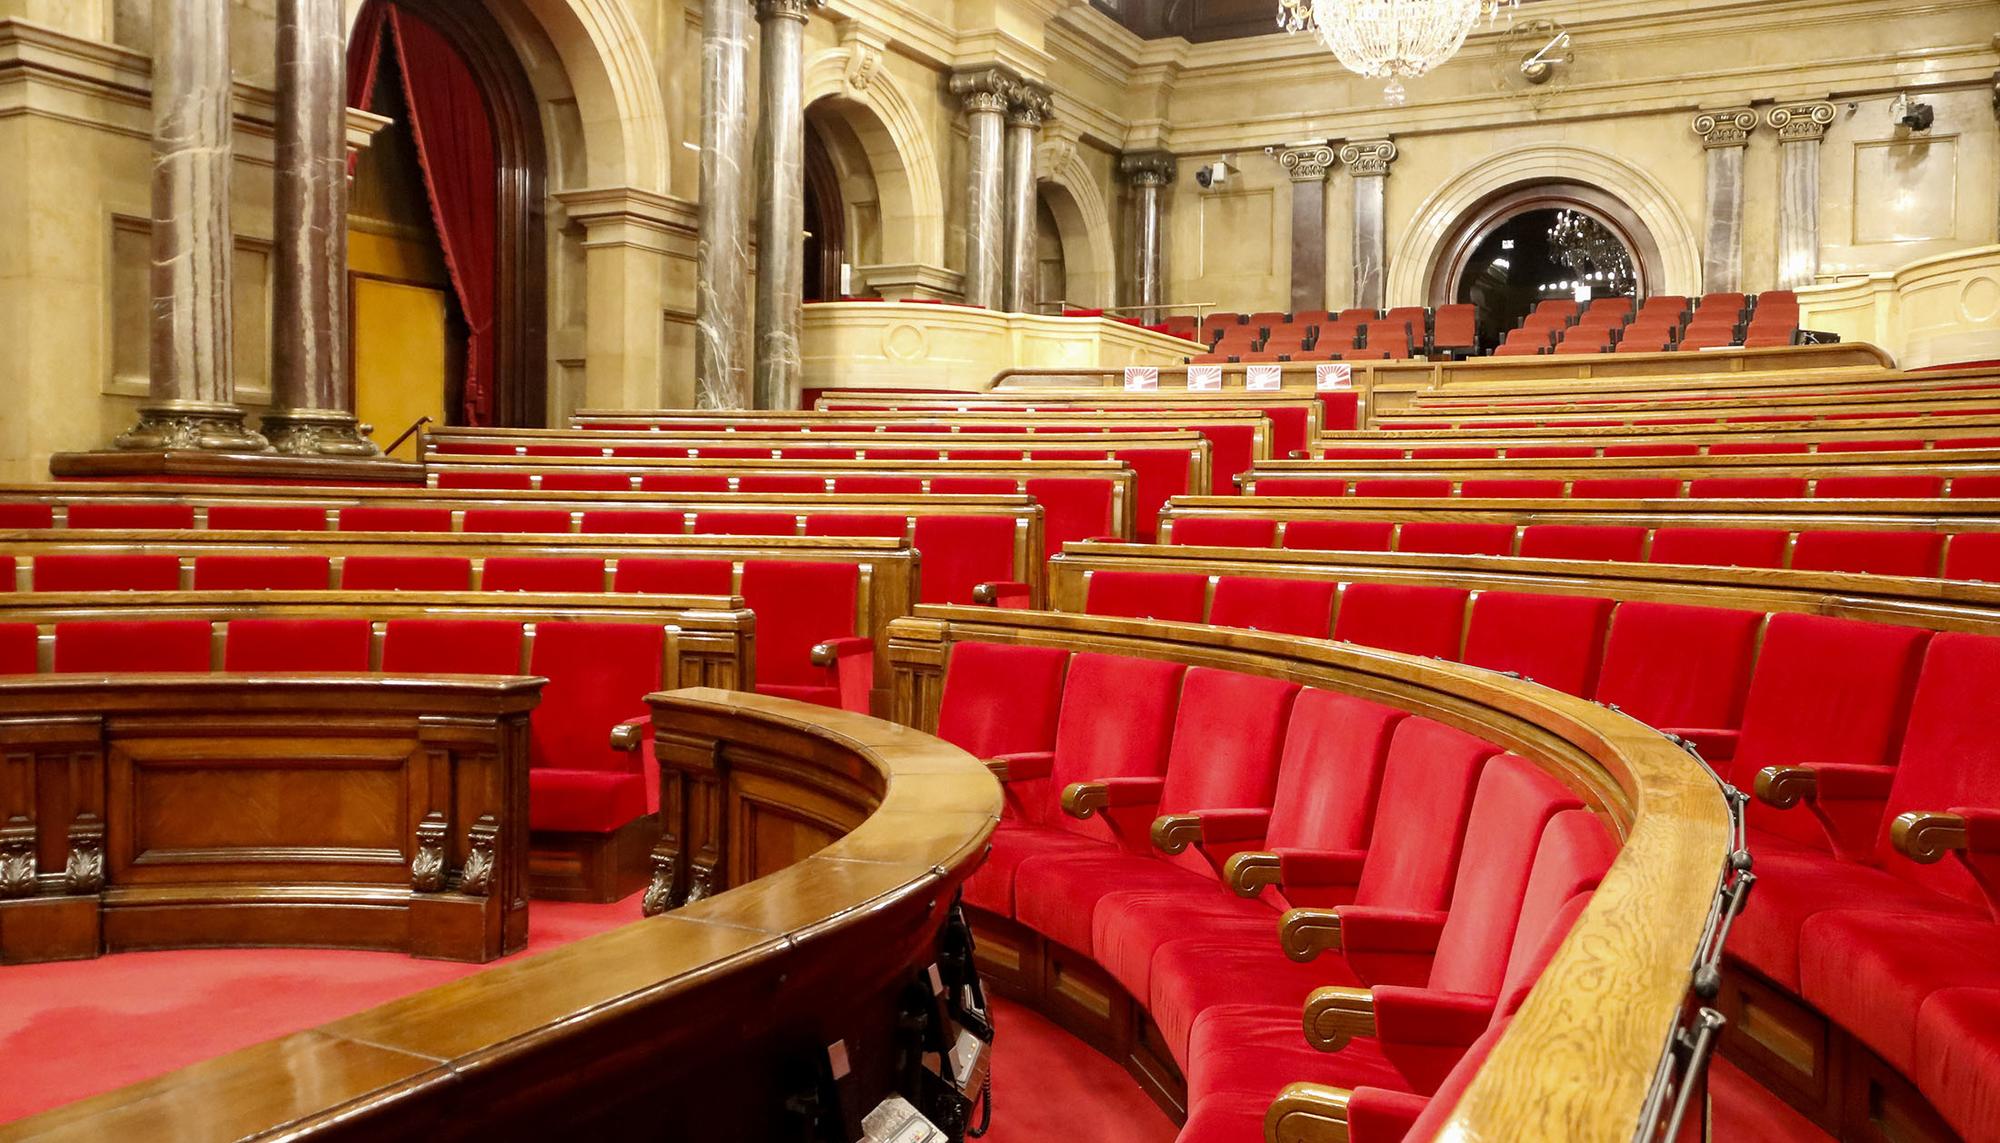 Parlament Catalunya